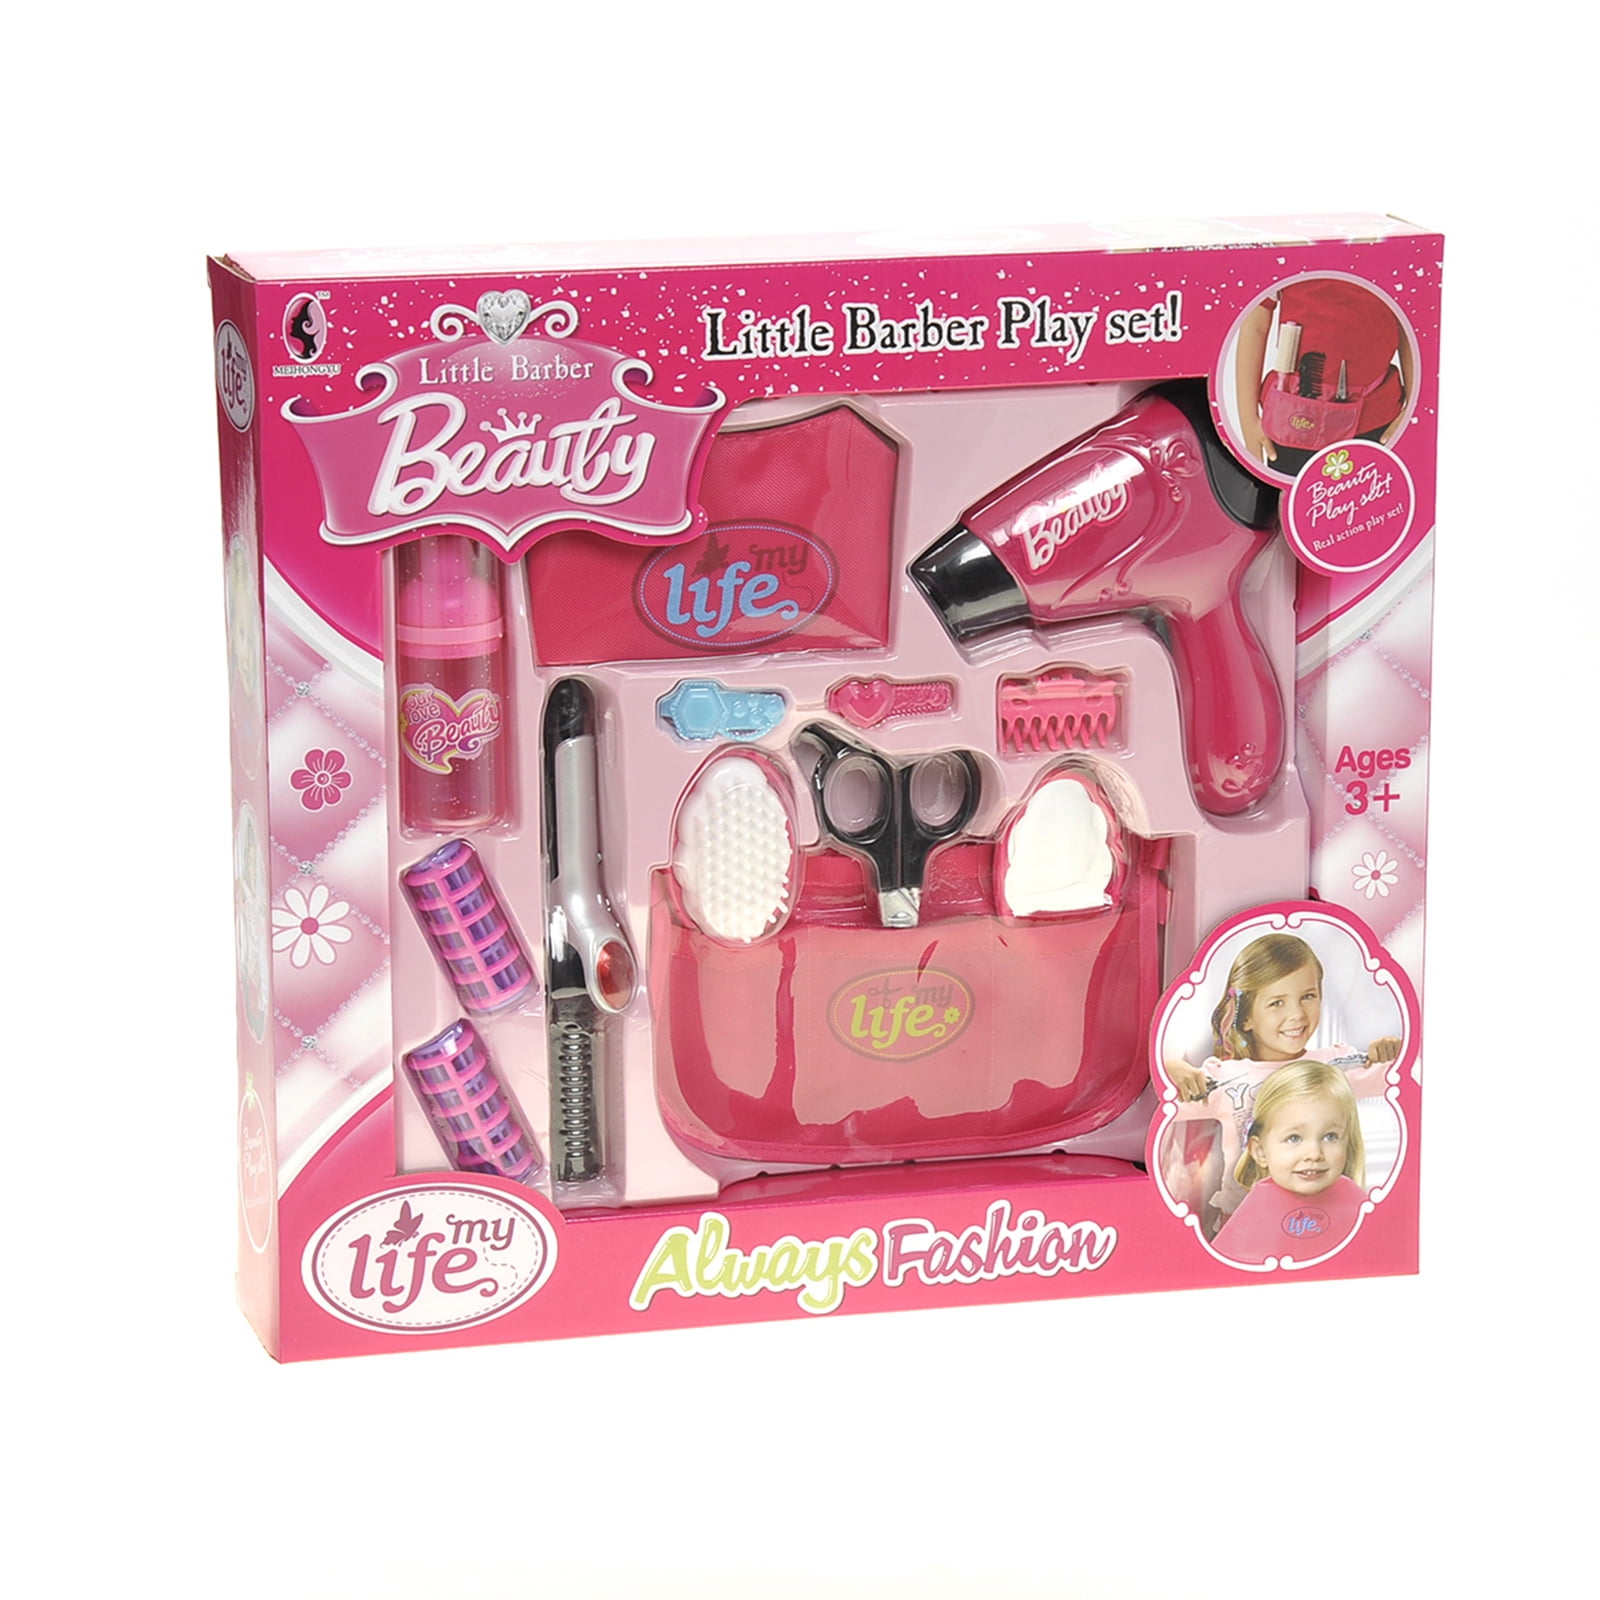 Beauty Salon Play Set Makeup Kids Girl Hairdryer Curling Iron Lipstick Gift New 